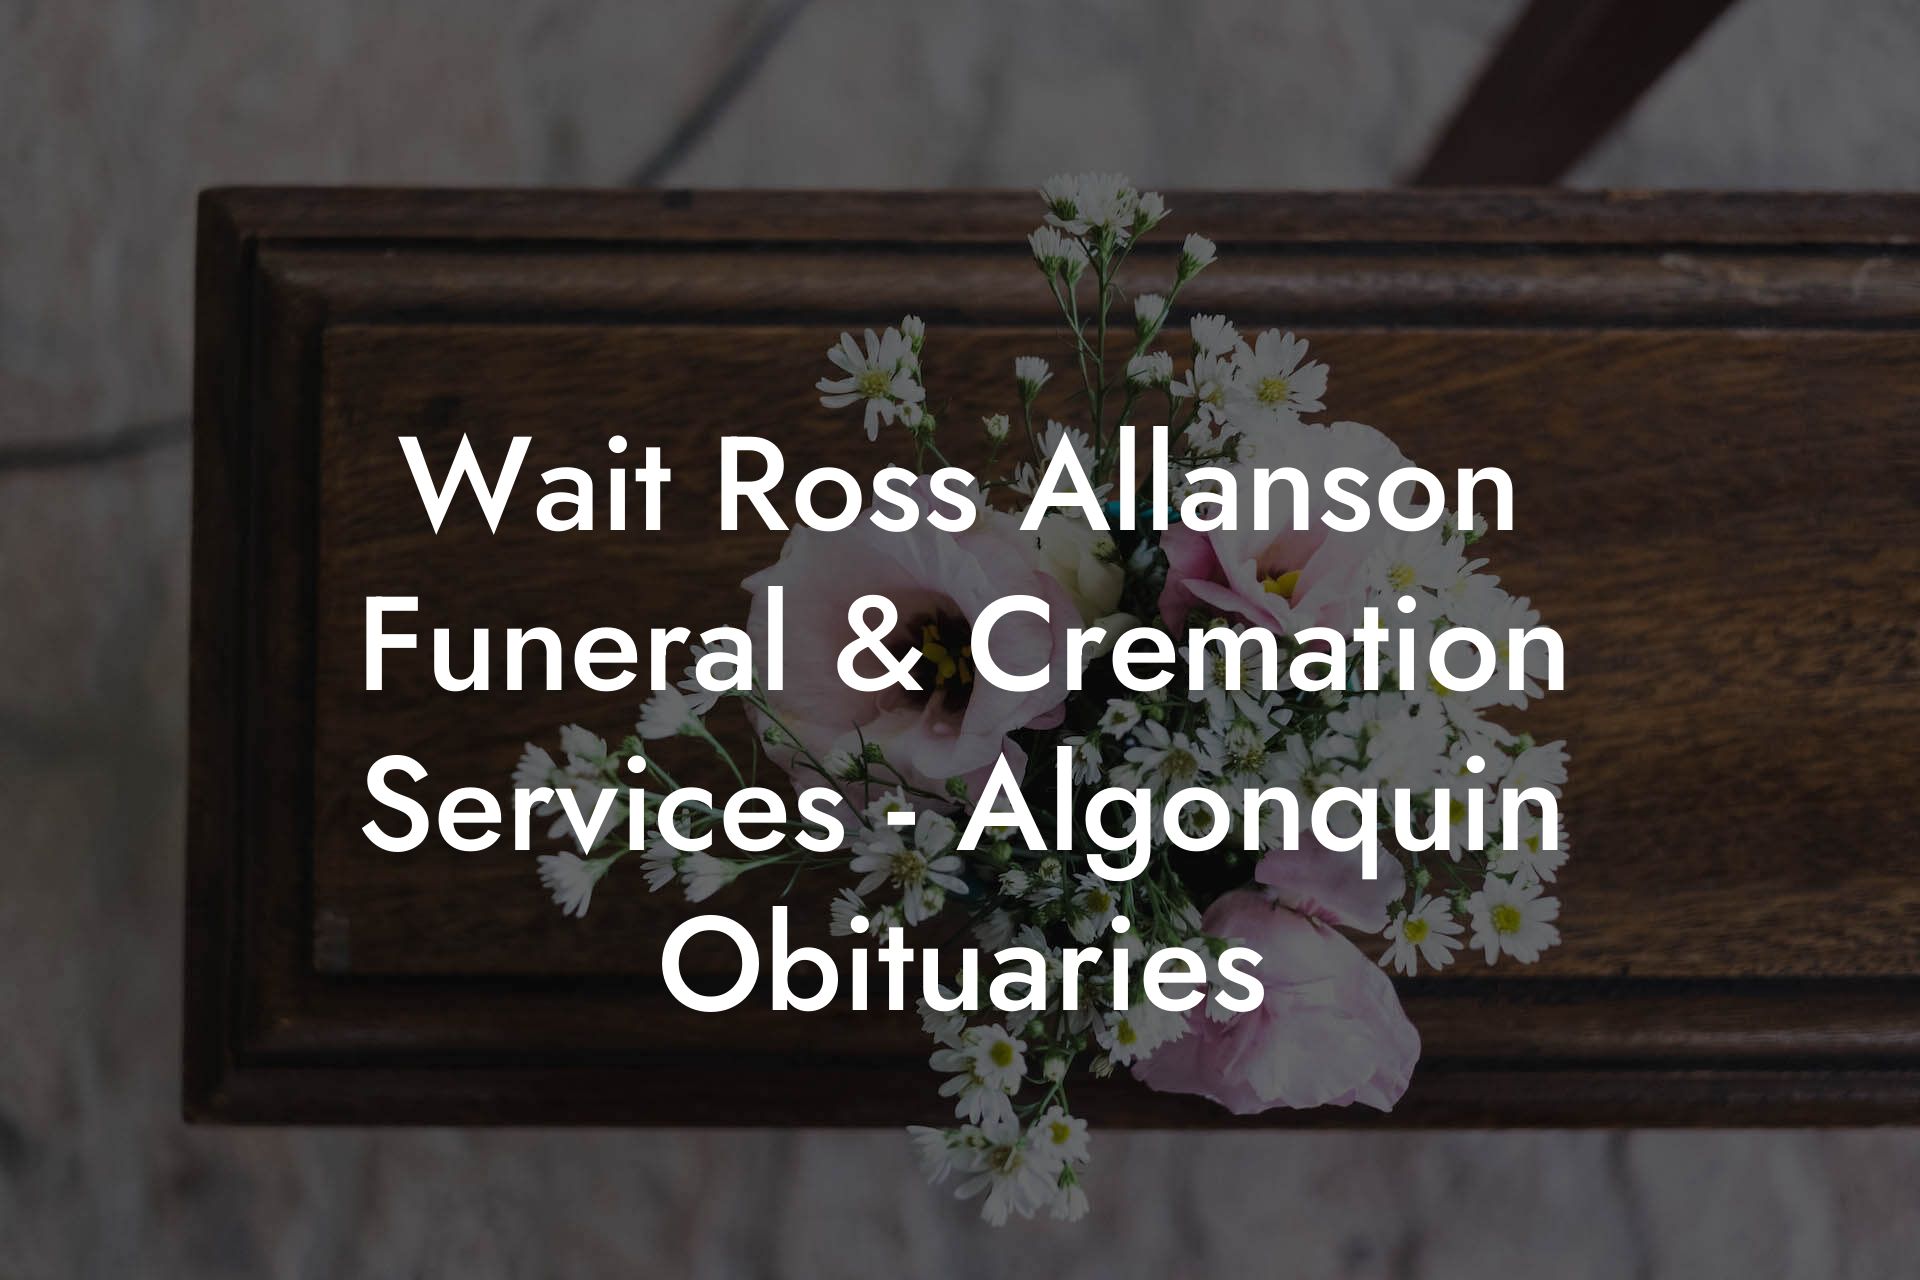 Wait Ross Allanson Funeral & Cremation Services - Algonquin Obituaries